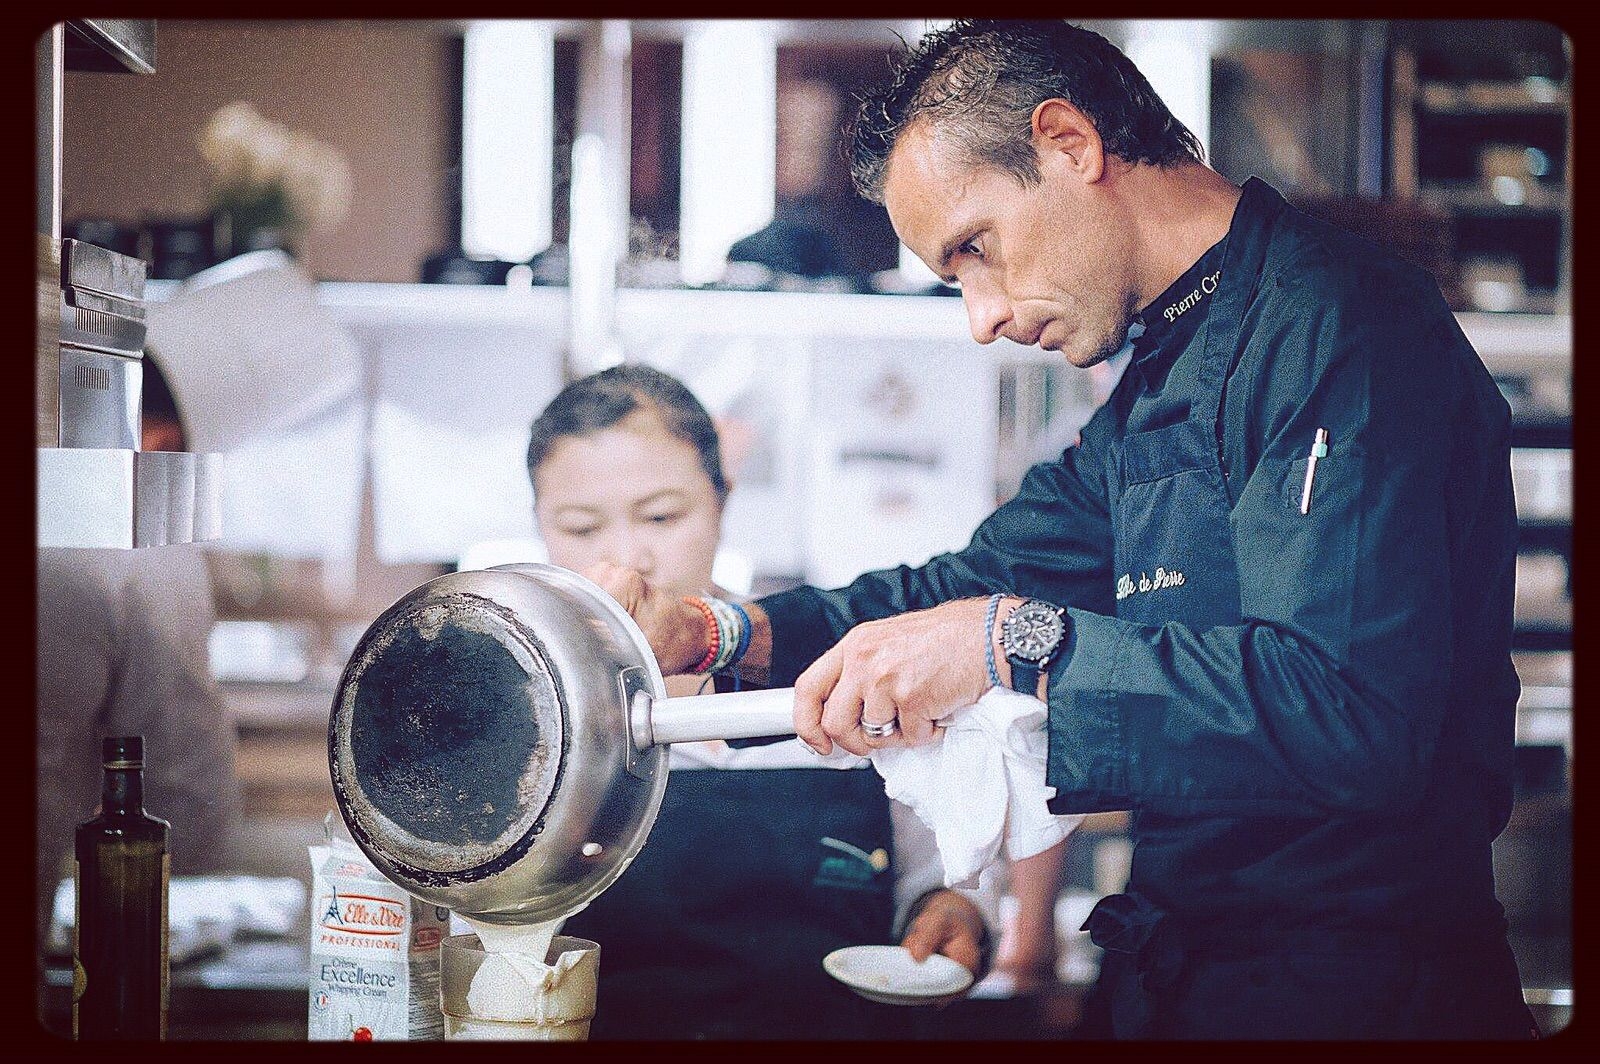 Pierre Crepaud, chef du restaurant Le Mont Blanc, LeCrans&Spa HÙtel ‡ Crans-Montana reÁoit sa premiËre Ètoile Michelin